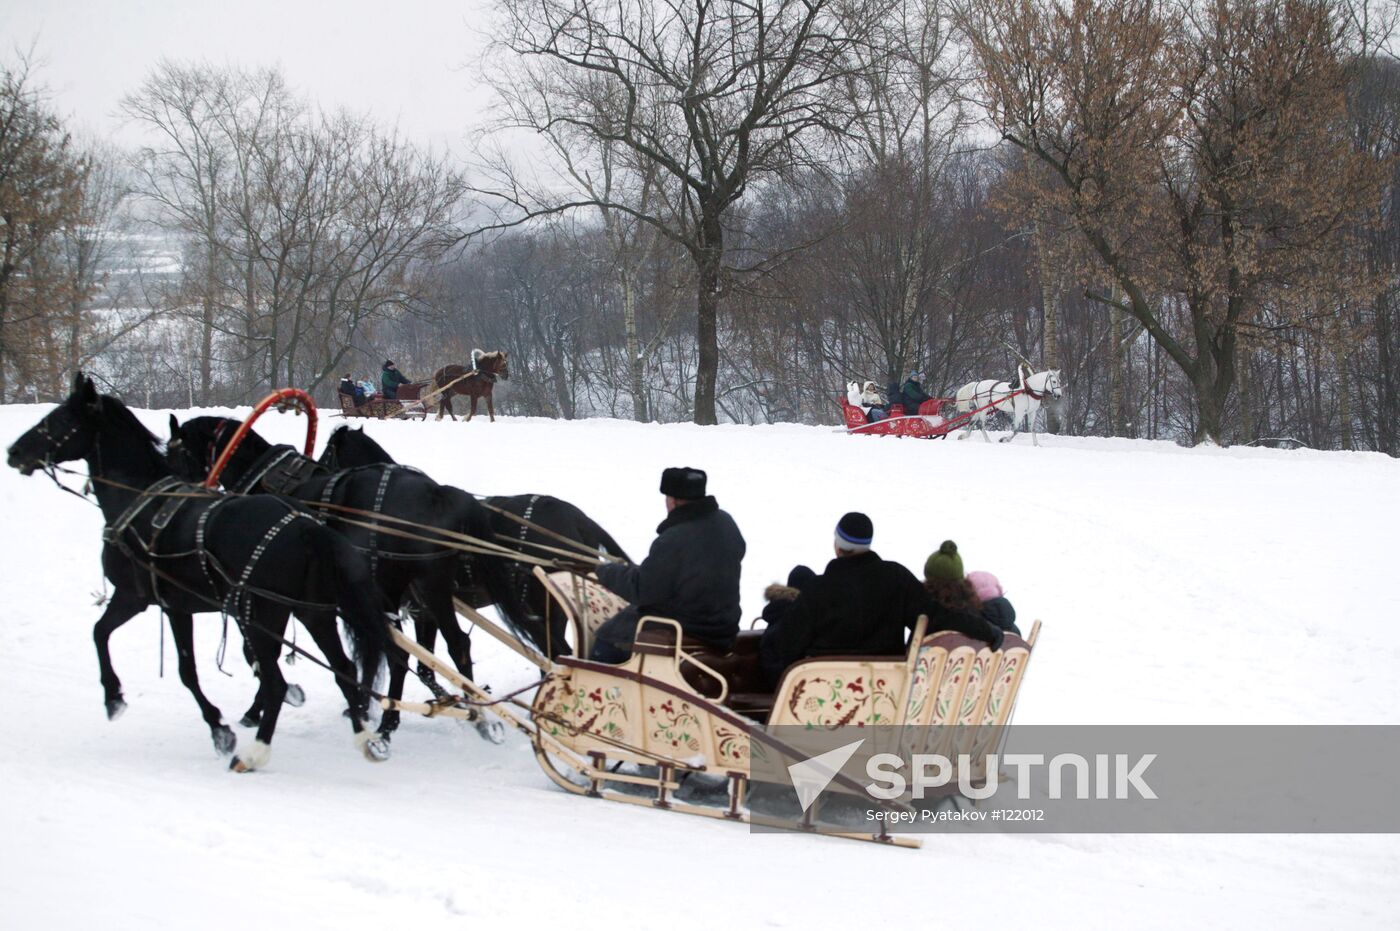 Sleigh riding horses Kolomenskoye winter snow